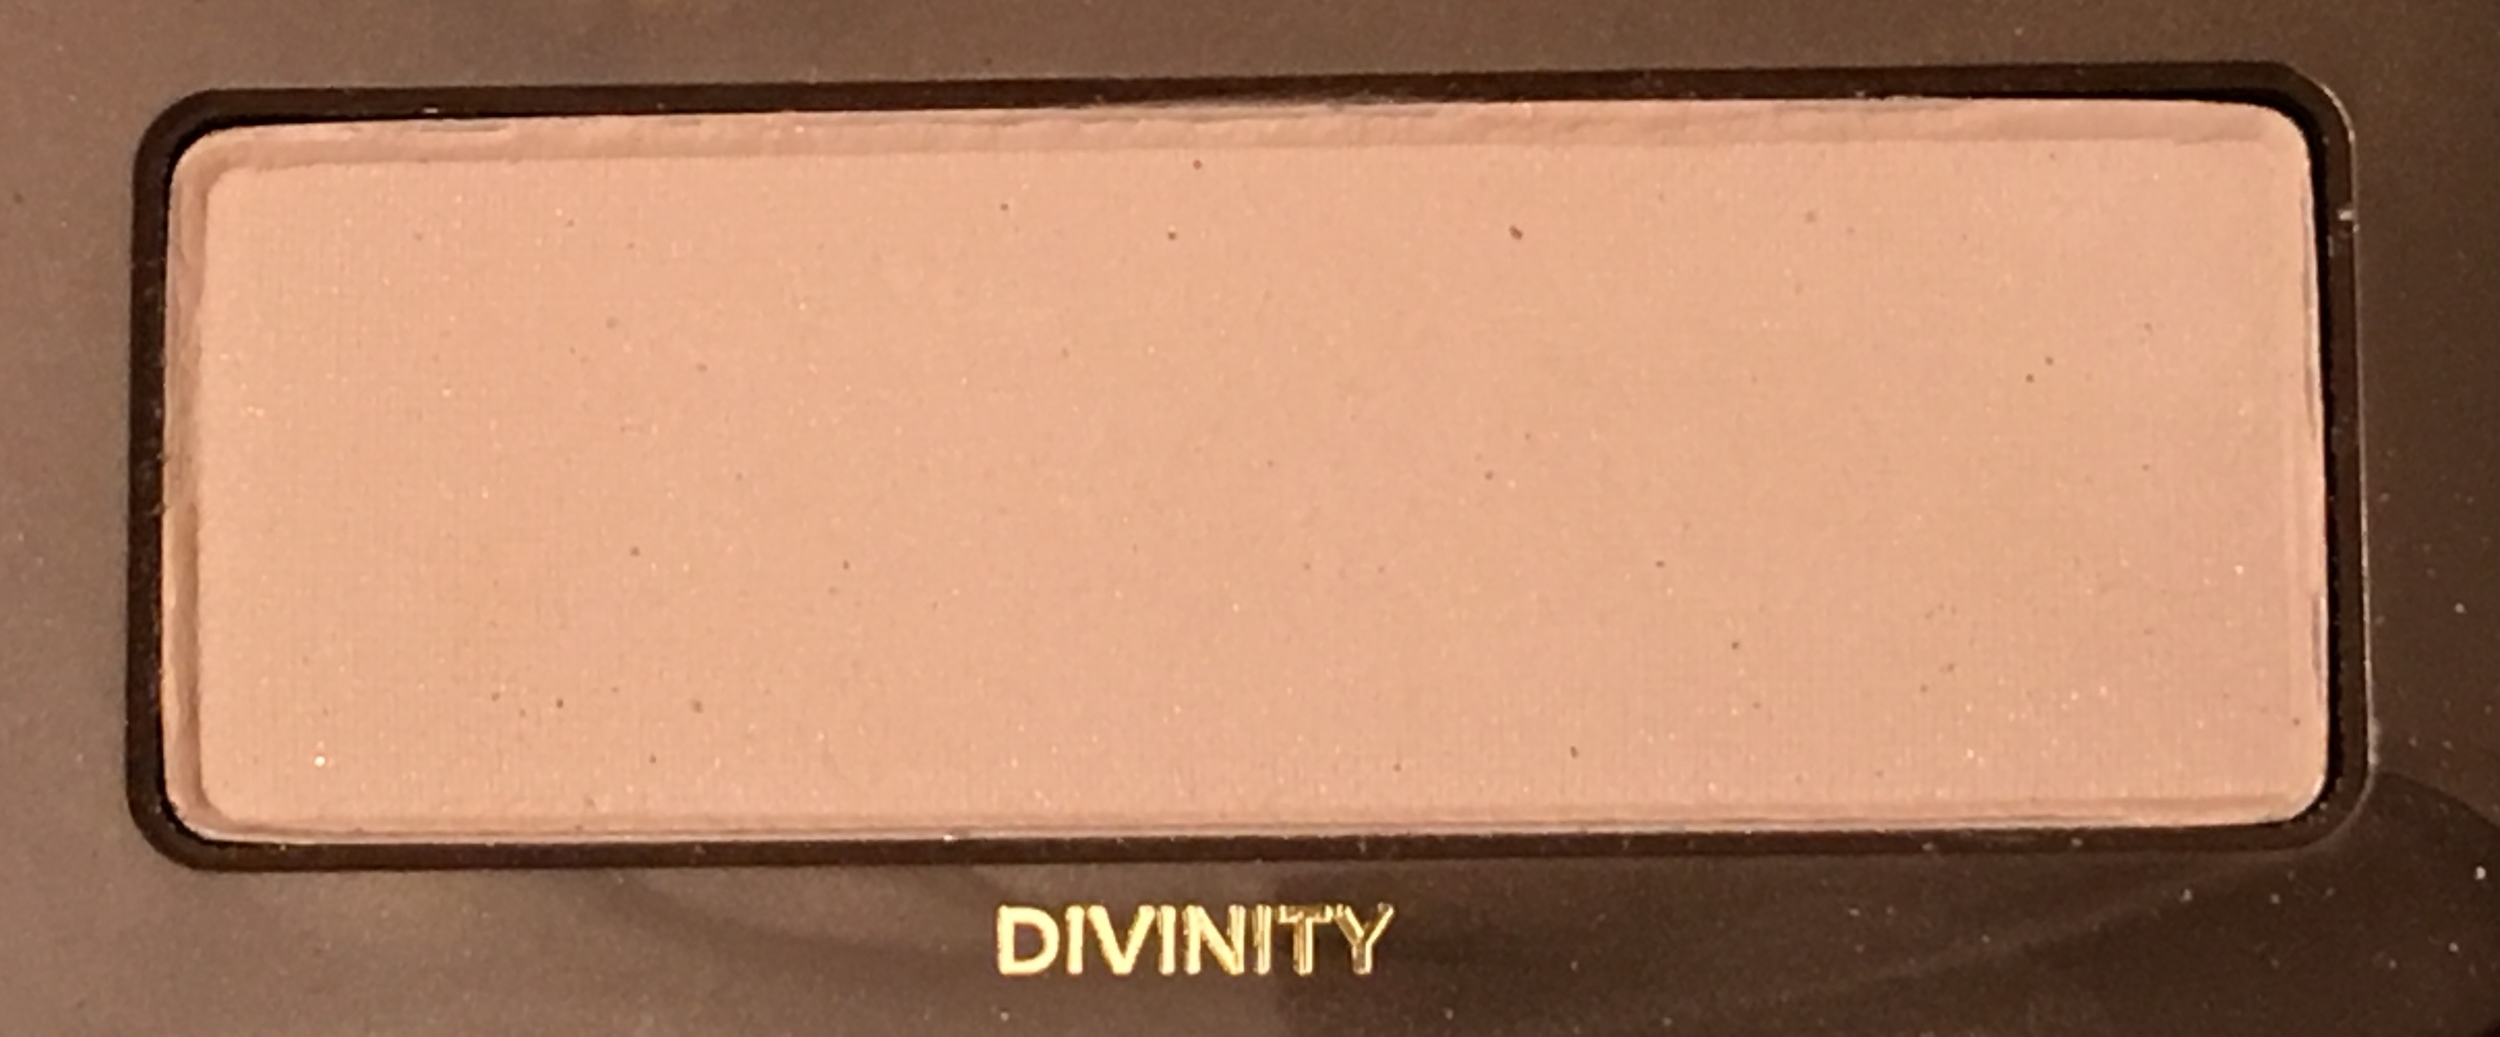 Divinity (Matte Warm Cream)